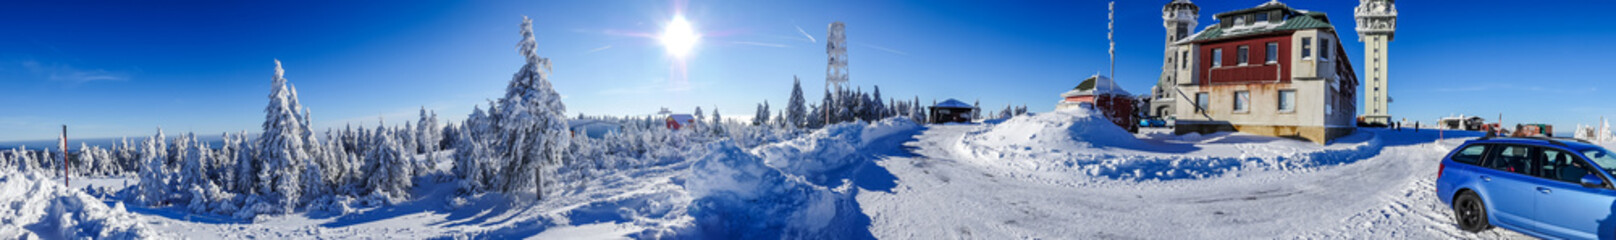 Winterpanorama von Klinovec